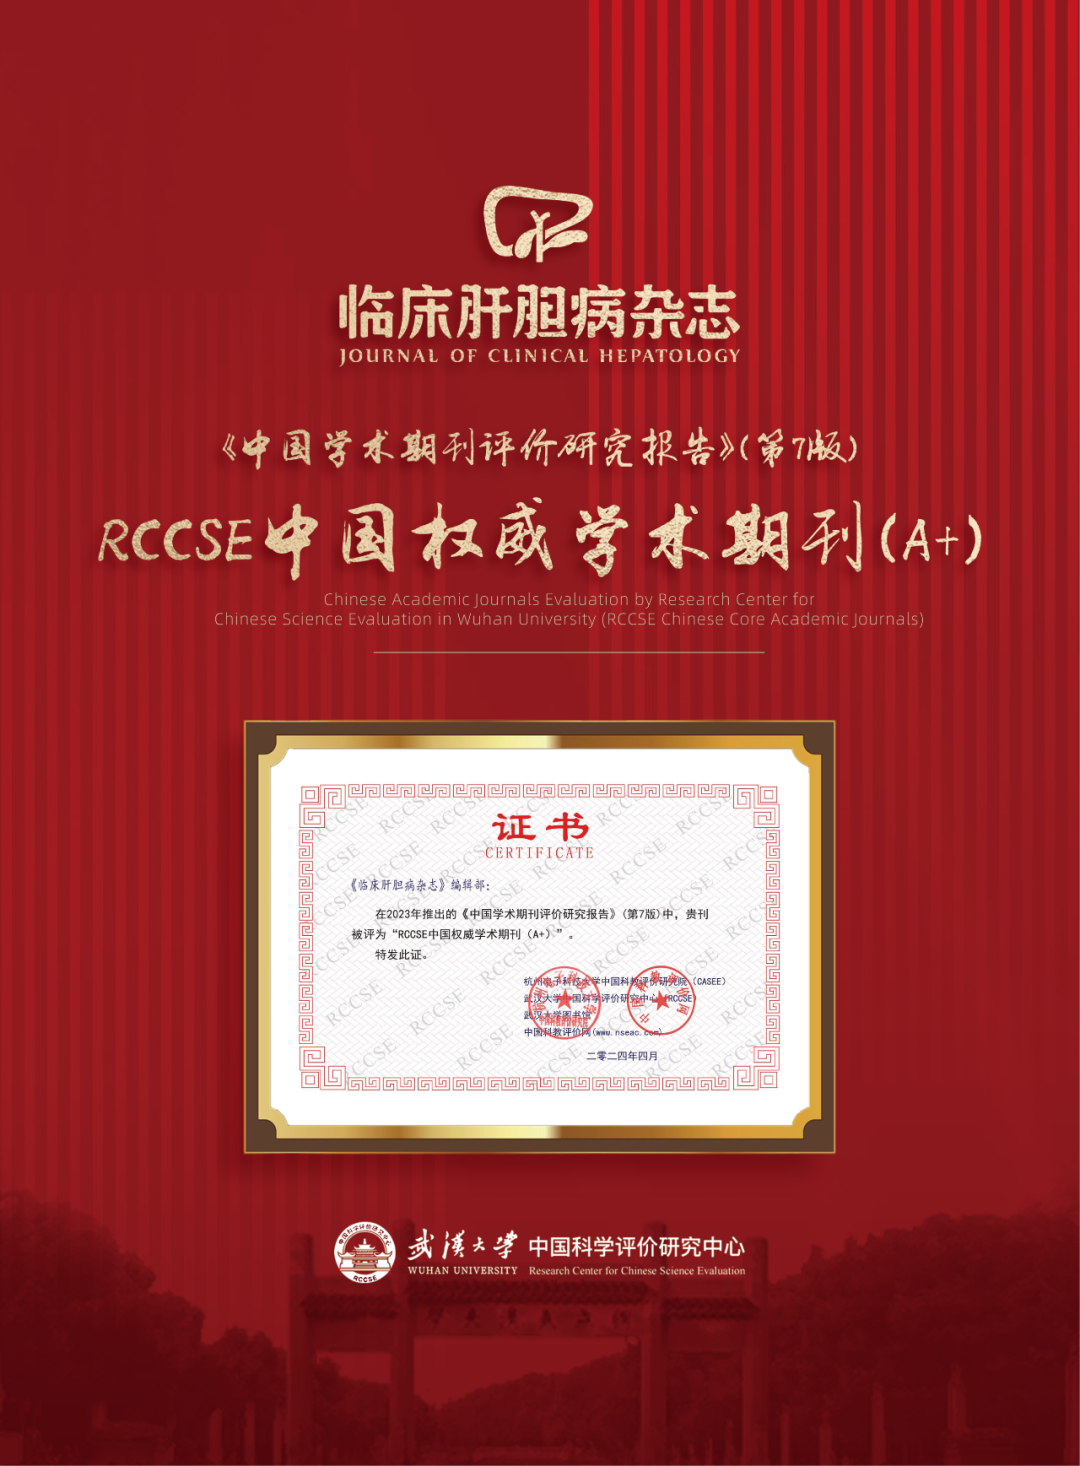 《临床肝胆病杂志》获评“RCCSE中国权威学术<font color="red">期刊</font>（A+）”